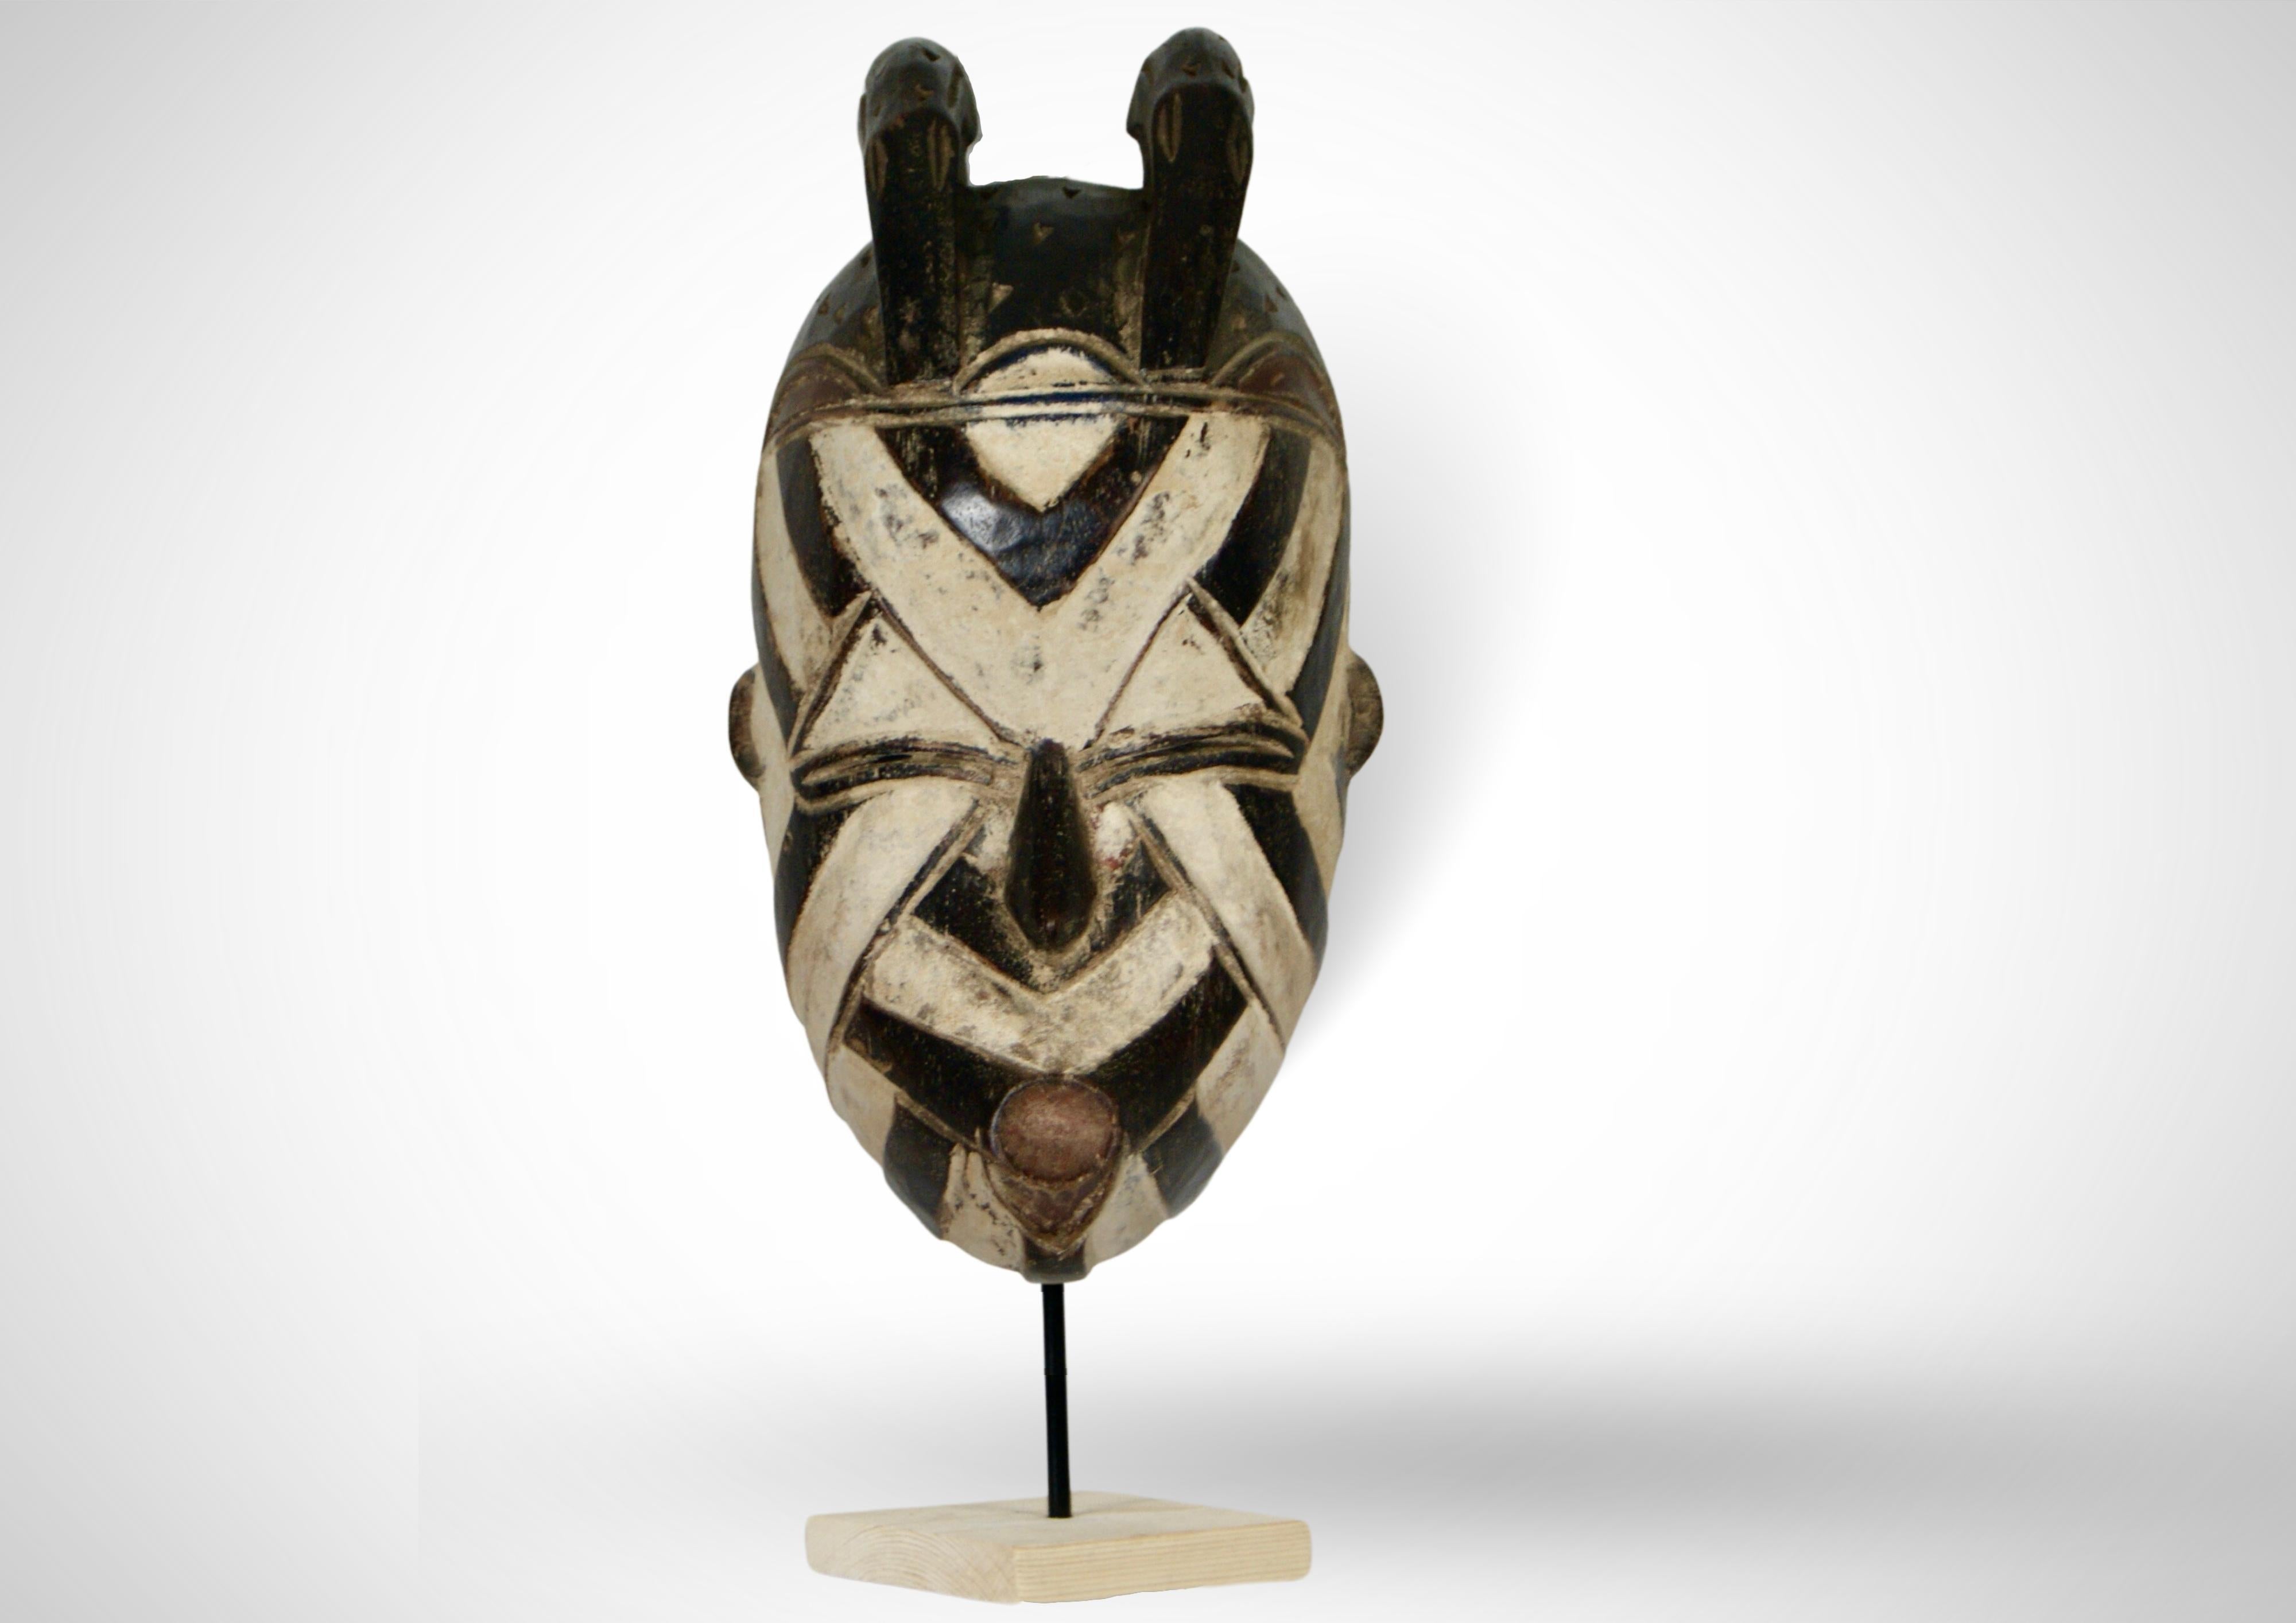 Nous vous proposons un masque Basangwe du peuple Songye de la République démocratique du Congo, datant des années 1950.
 
Le masque présente la forme faciale typique des masques Basangwe.
Au sommet, elle présente une paire d'oiseaux stylisés décorés